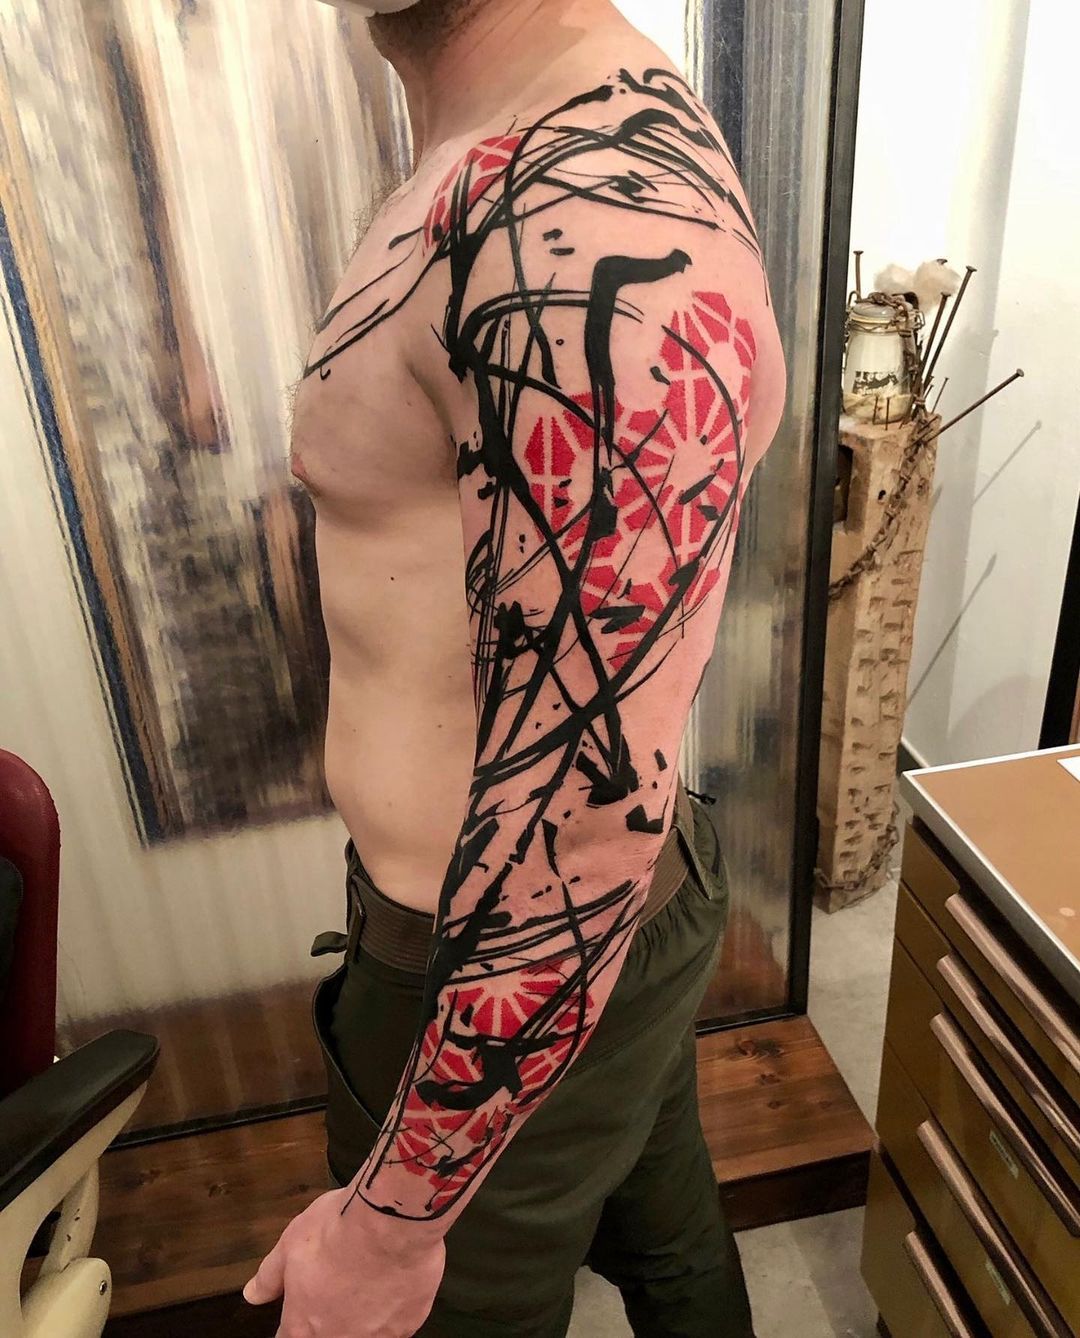 Demon Ink Tattoos on Twitter Black and red dragon tattoo done by JP  Roldan inked tattoo tattoos japanesetattoos dragontattoo dragon  httpstcowy8seSQaRf  Twitter